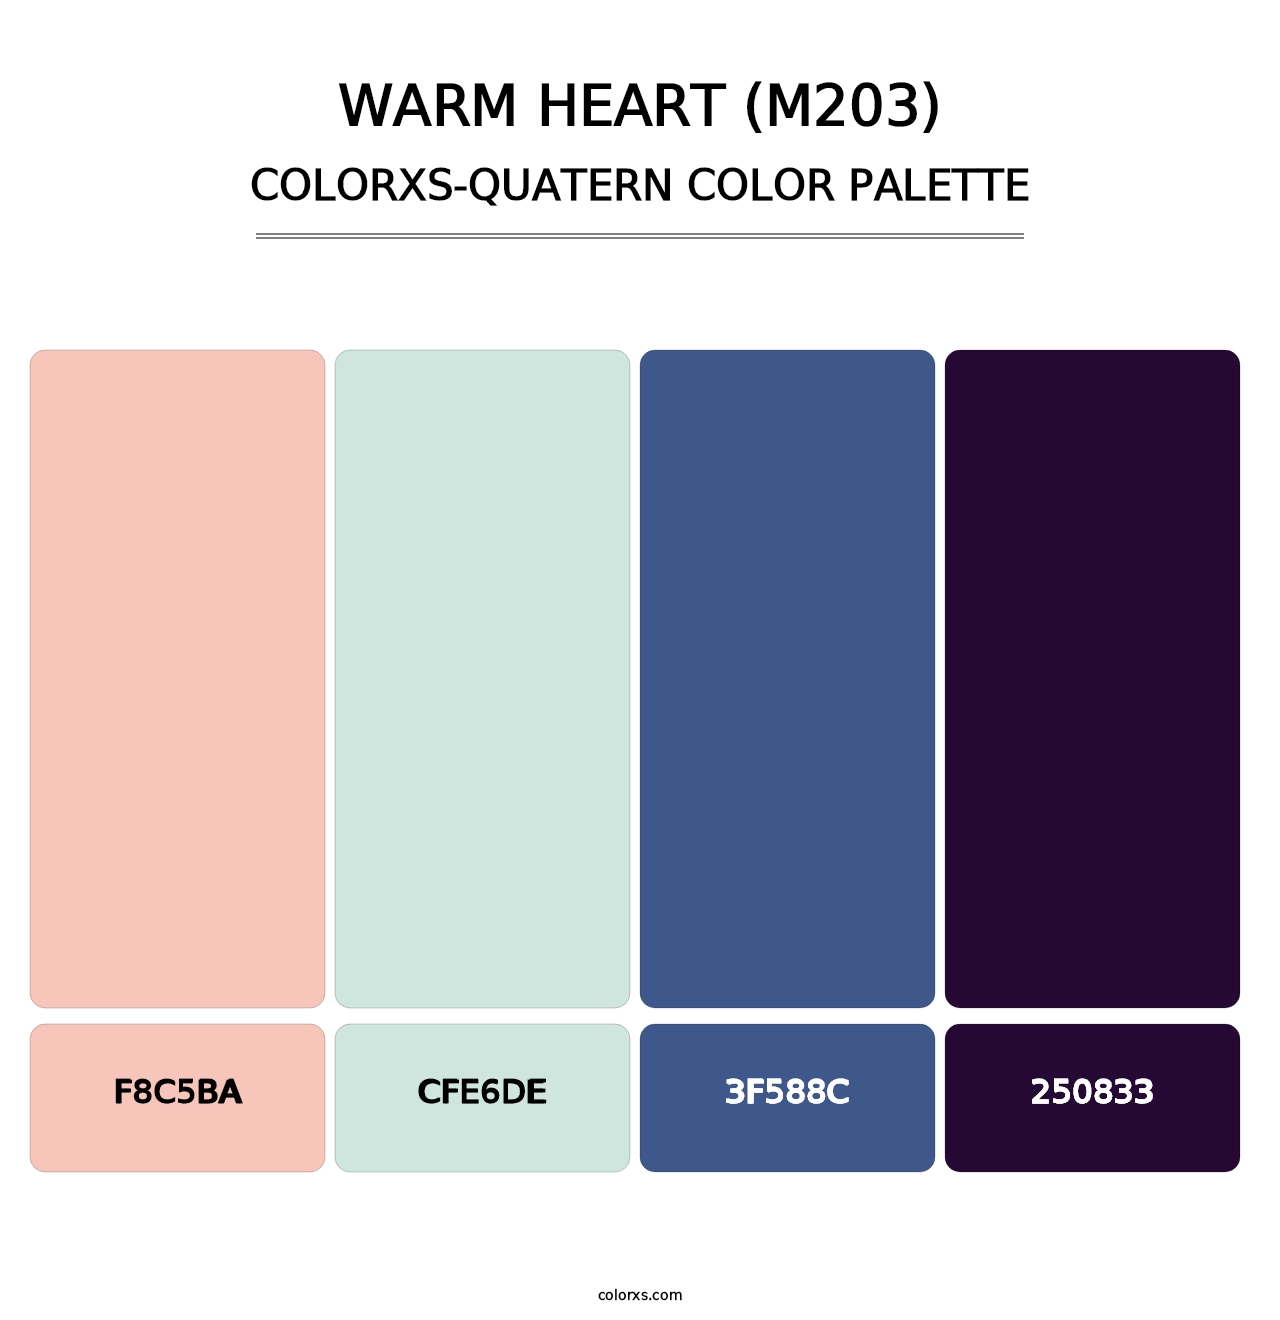 Warm Heart (M203) - Colorxs Quatern Palette